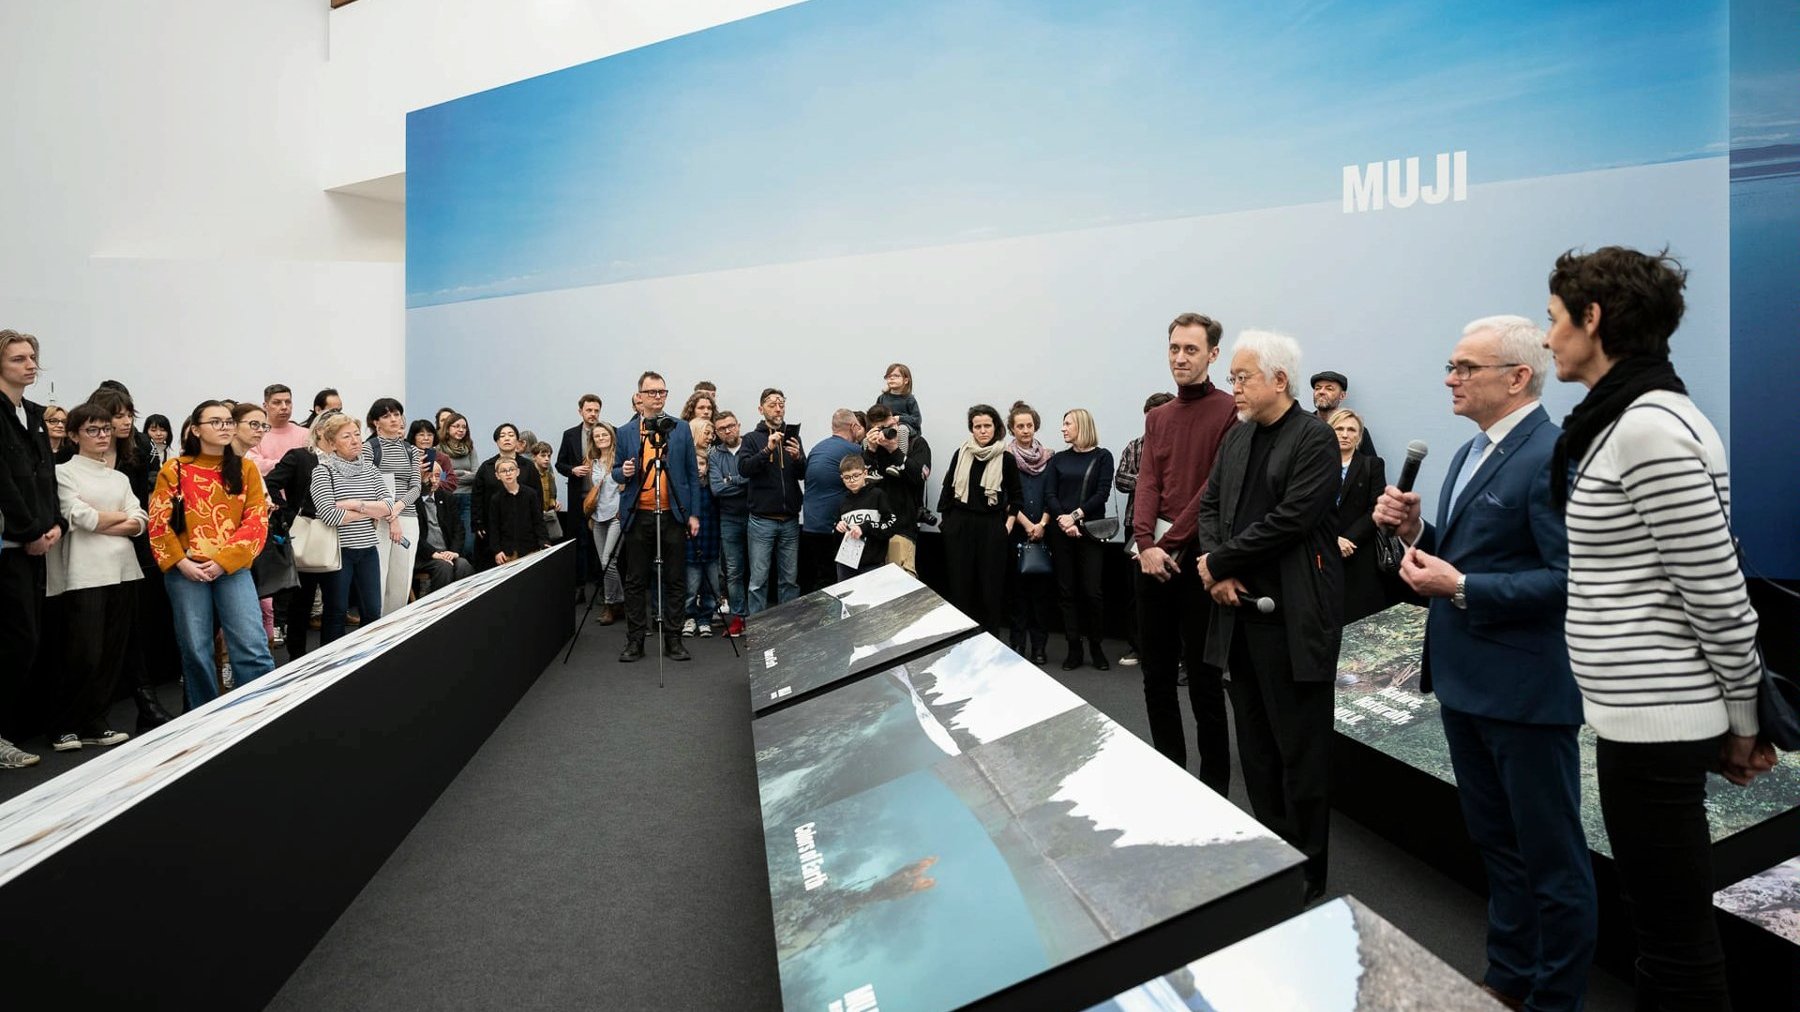 Galeria zdjęć przedstawia grupę ludzi stojąch w przestrzeni wystawienniczej w Muzeum Narodowym w Poznaniu.